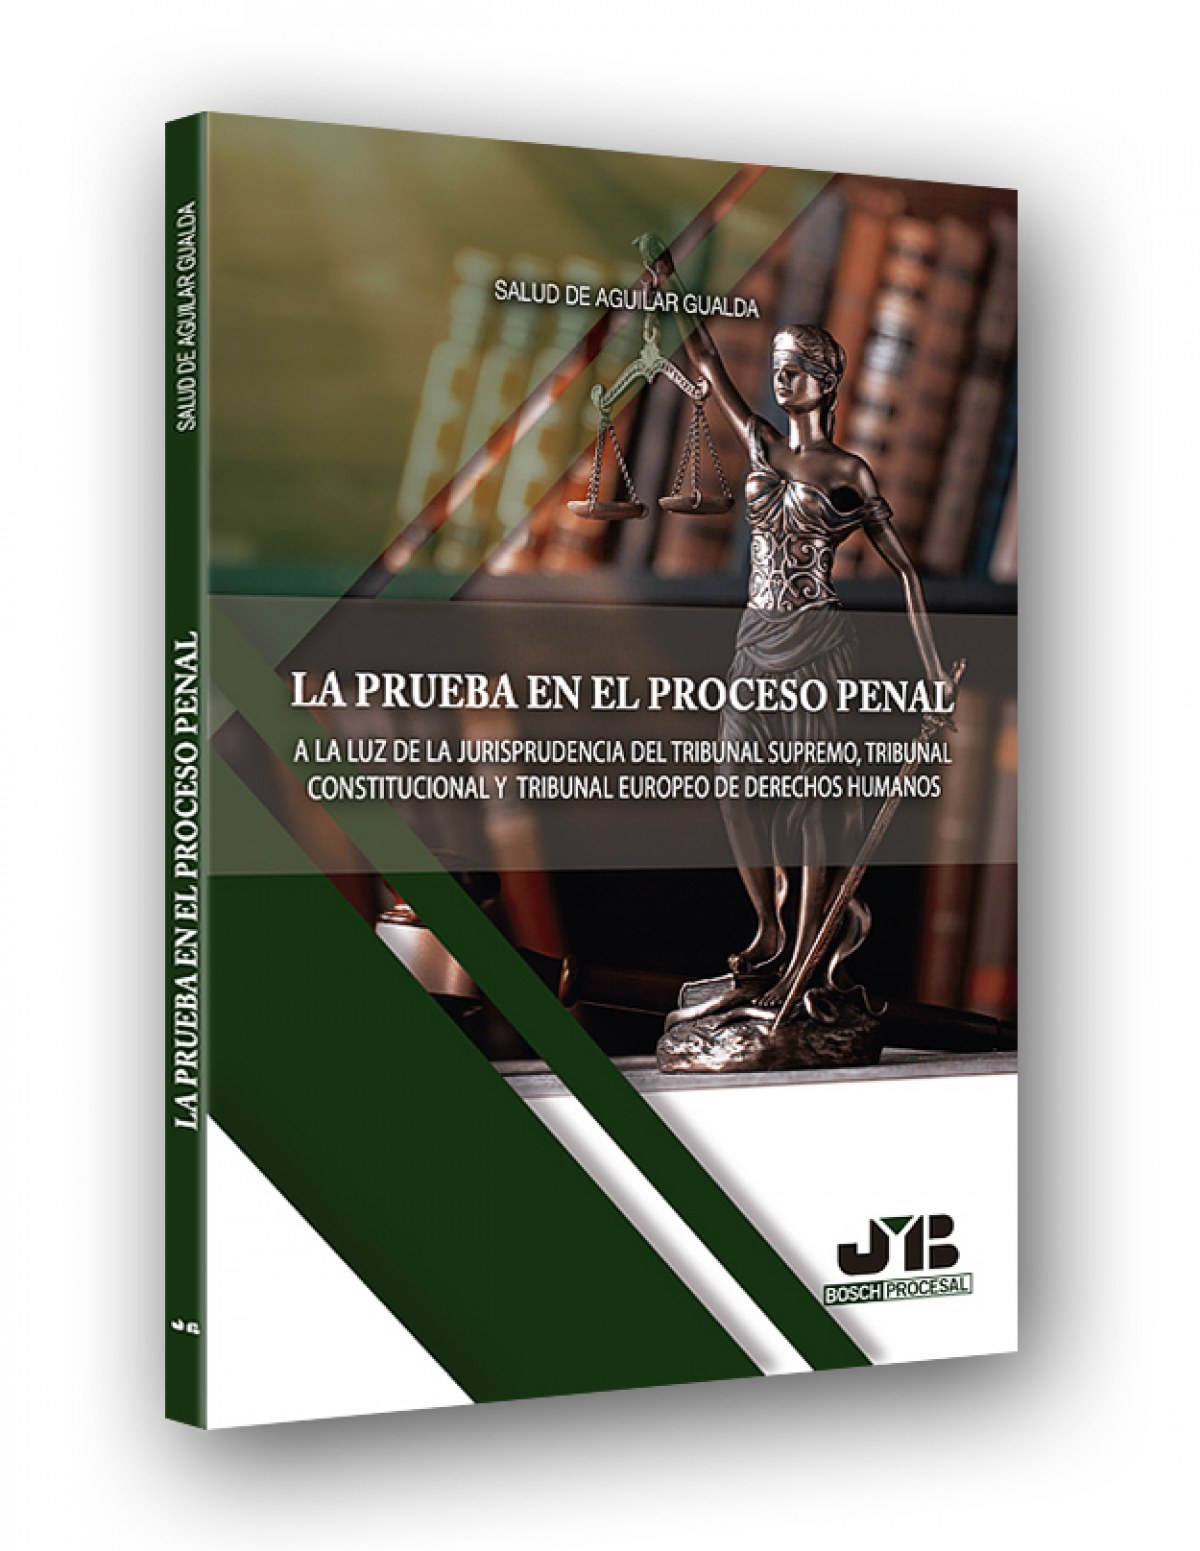 LA PRUEBA DEL PROCESO PENAL A la luz de la jurisprudencia del tribunal supremo, consituciona - Aguilar Gualda, Salud